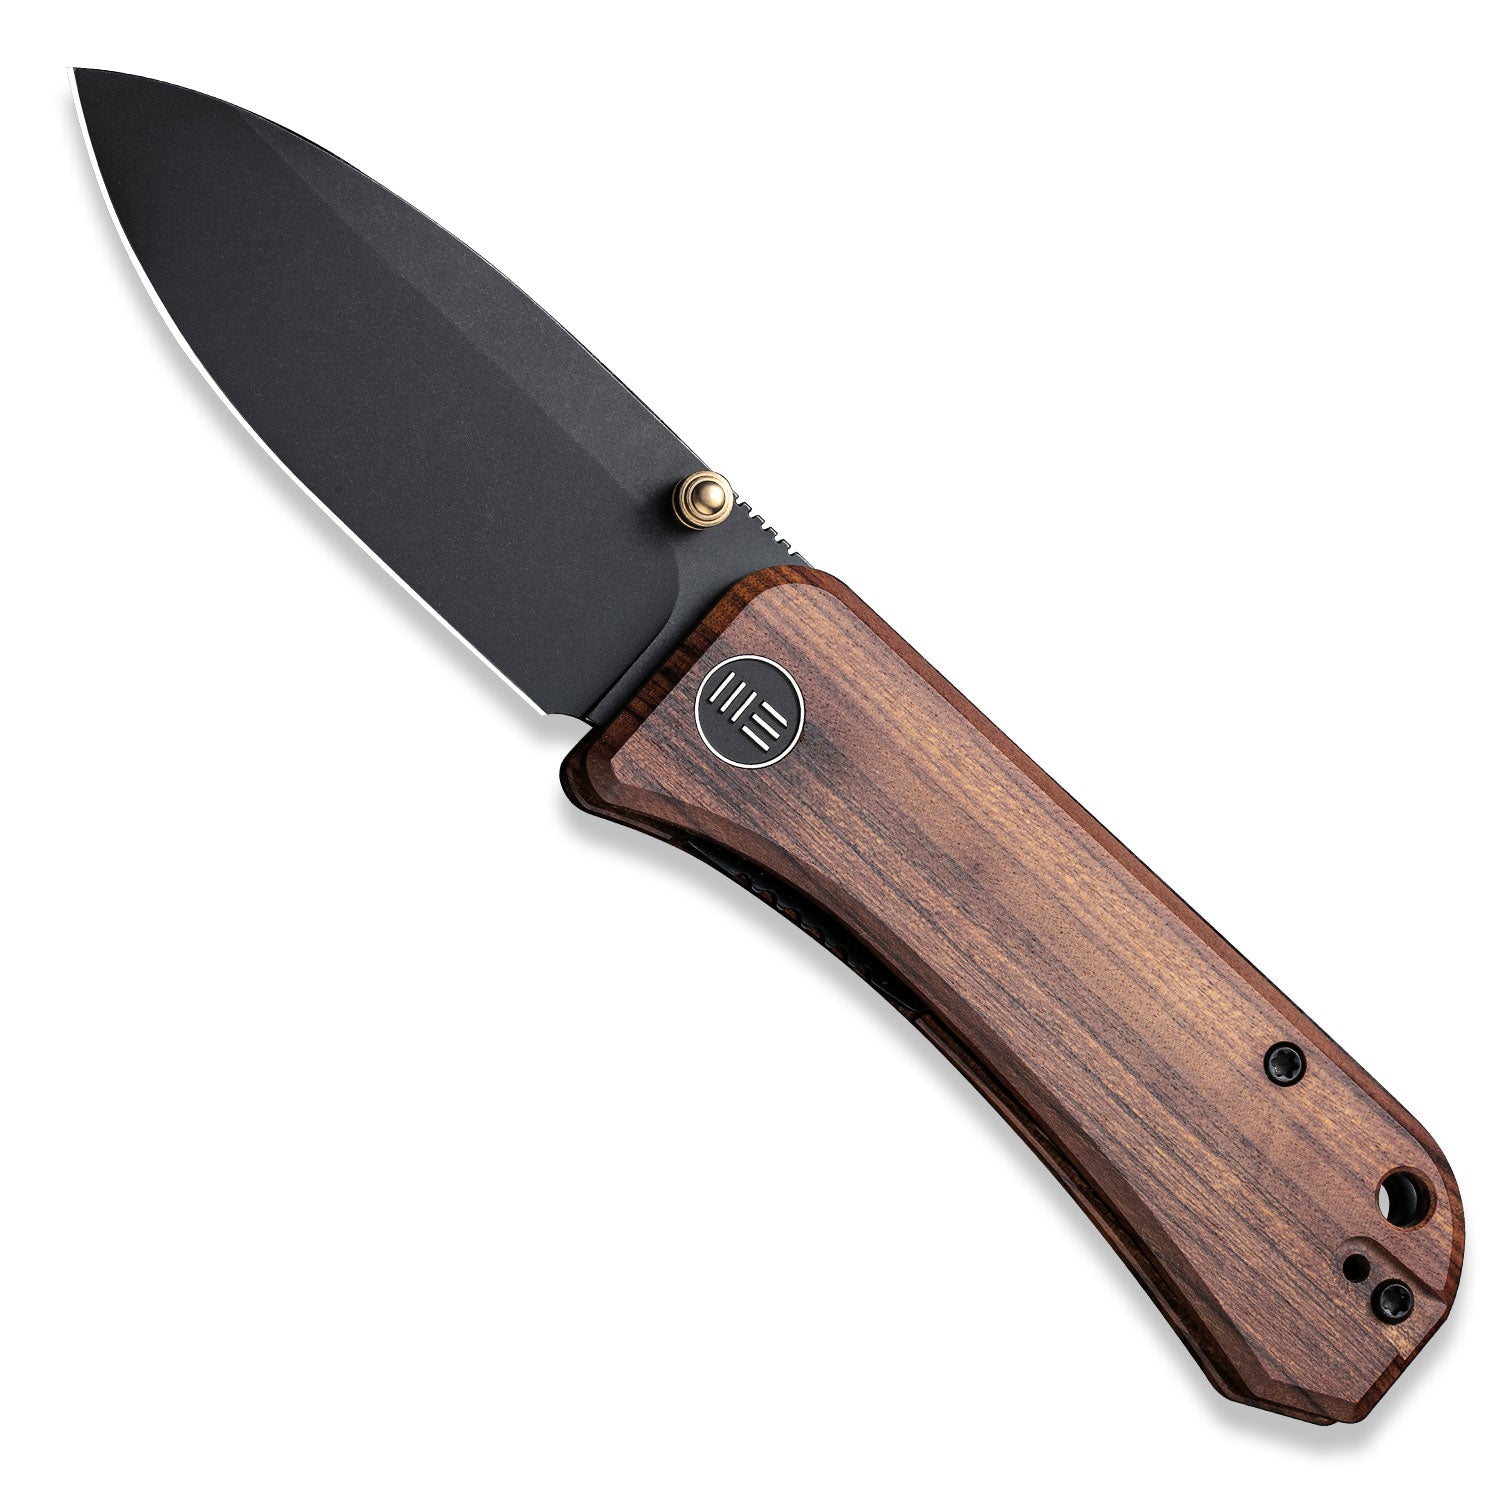 Banter Pocket Knife - Guibourtia Wood - S35VN